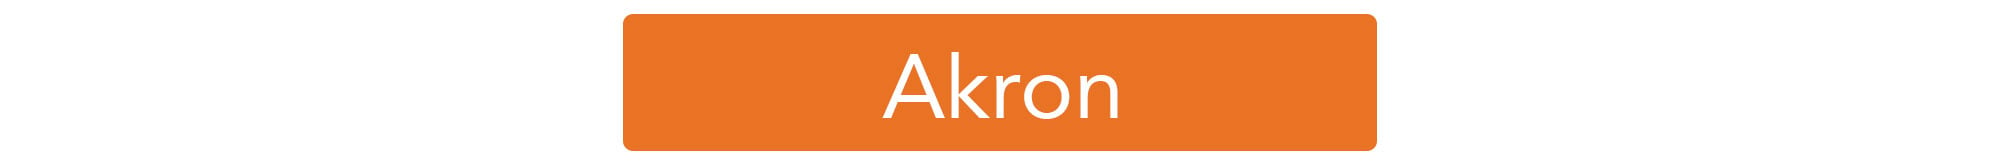 akron-orange